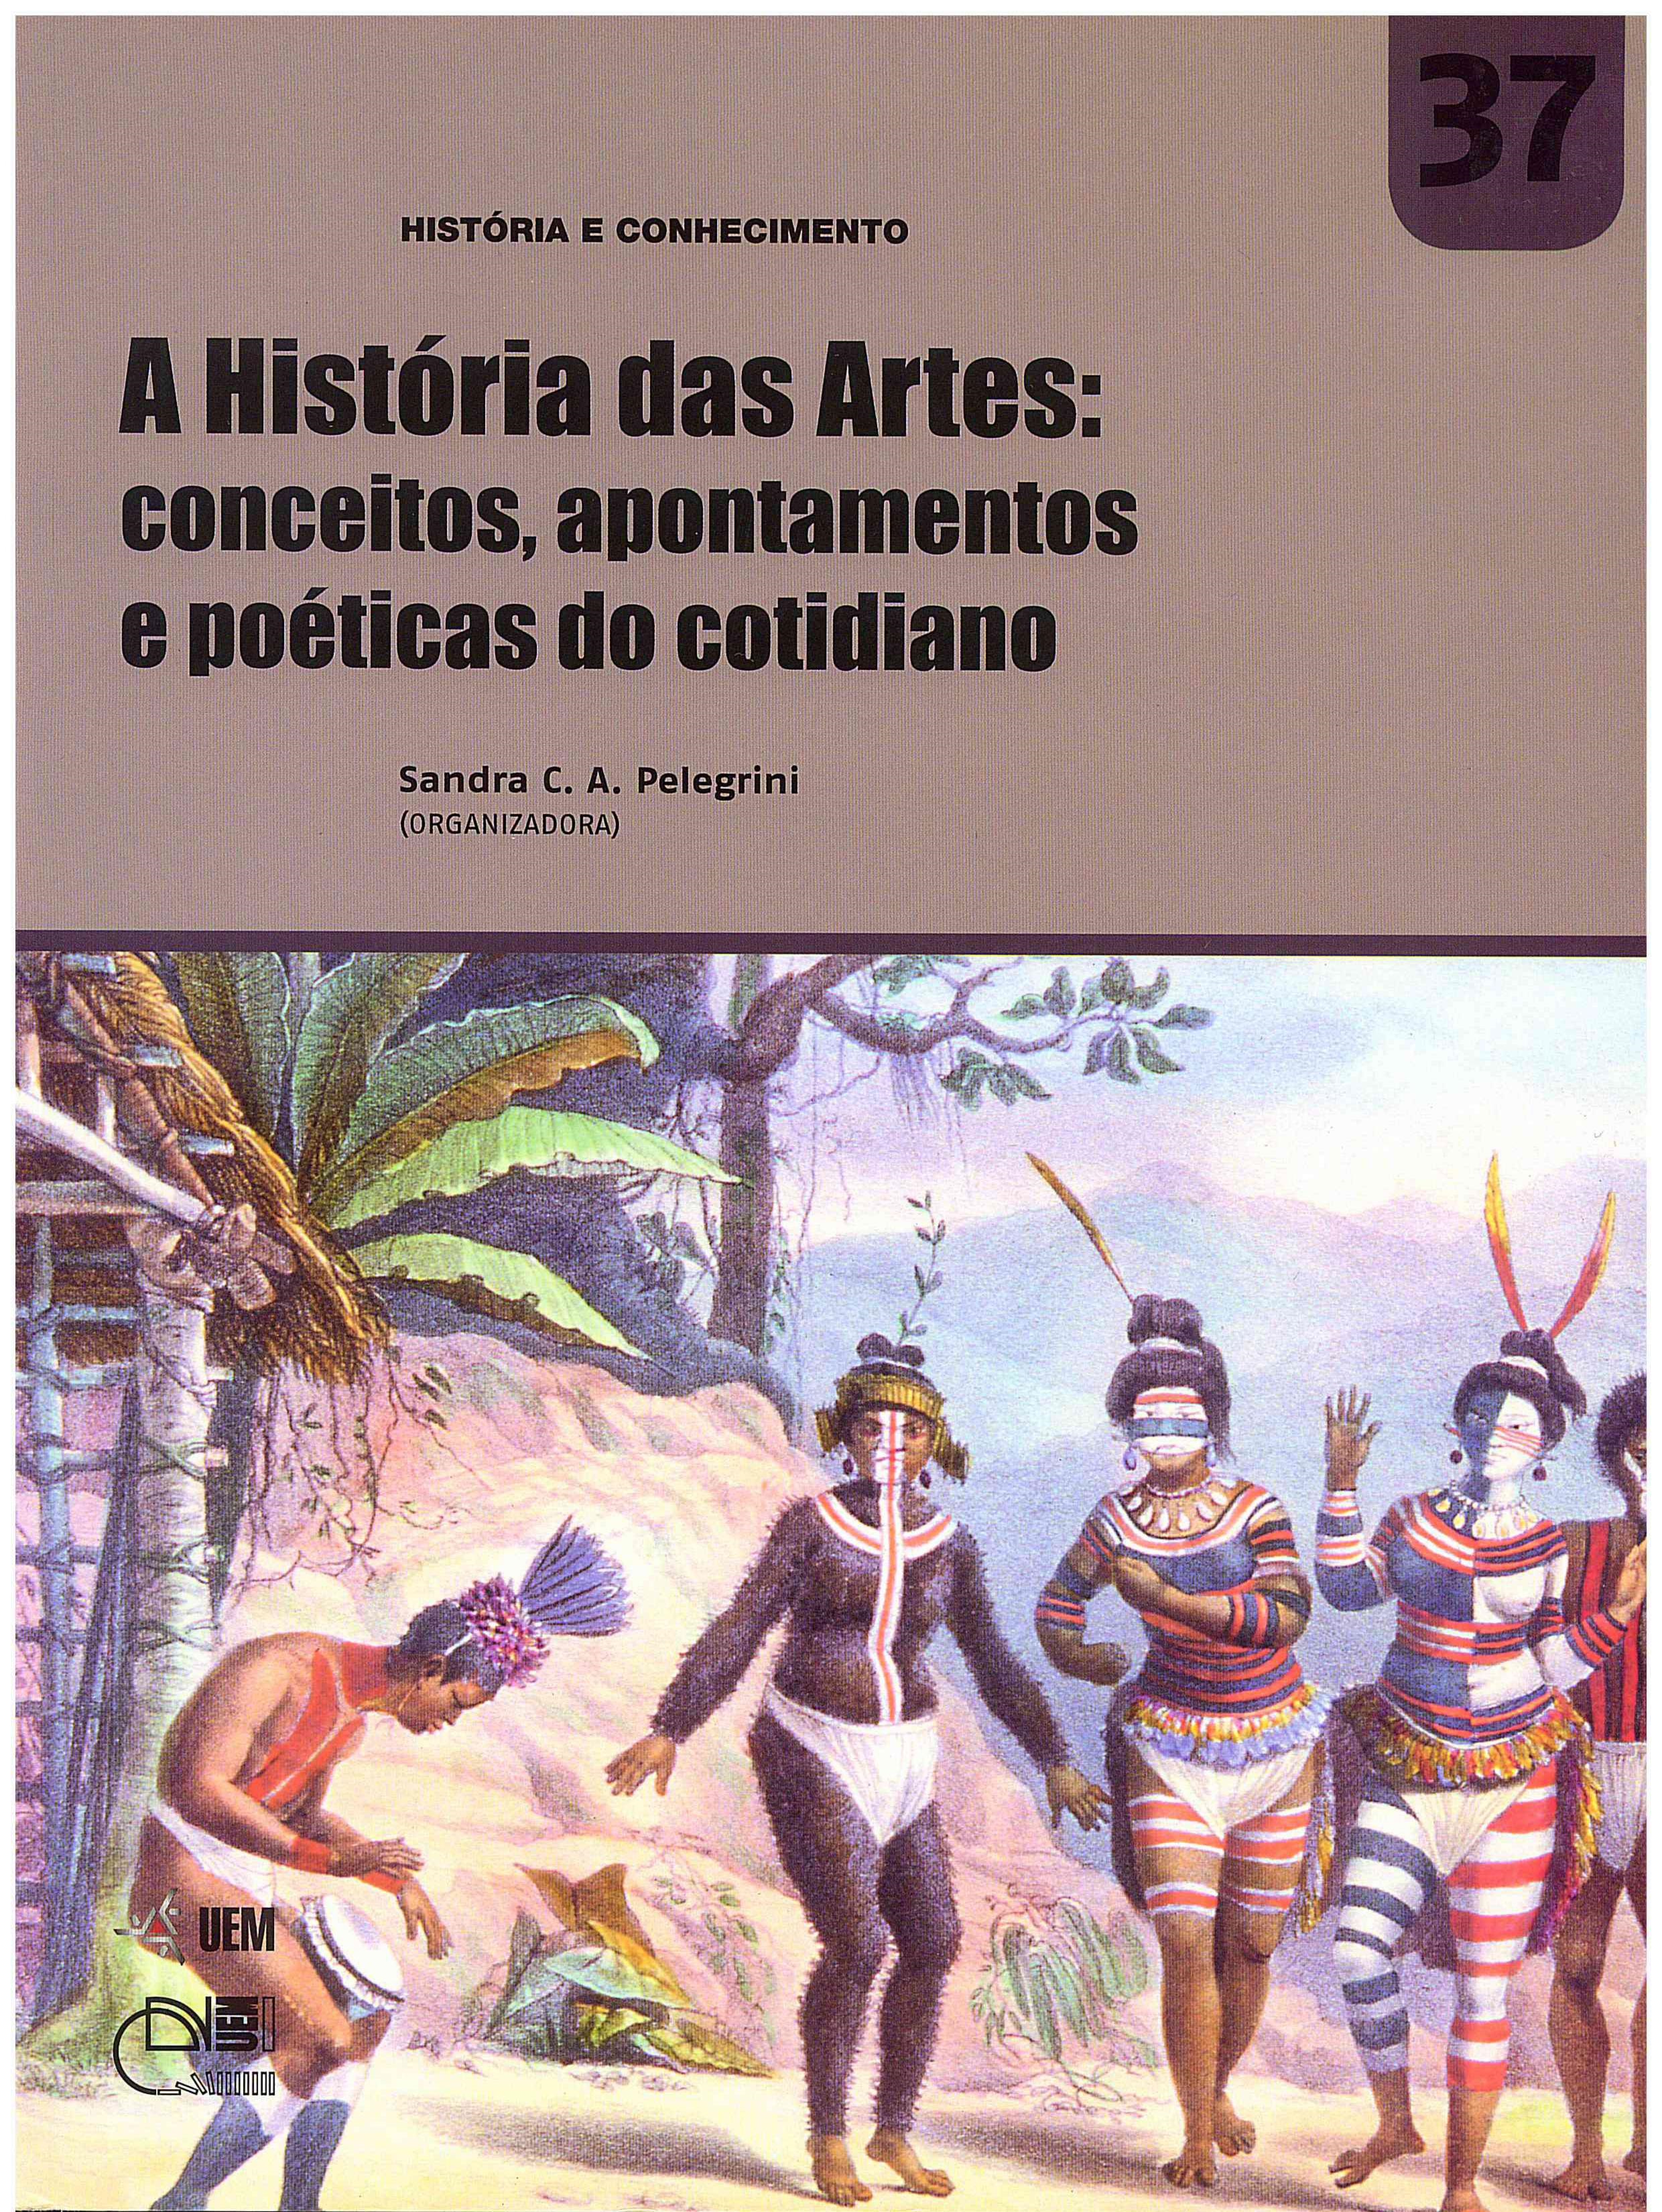 PELEGRINI, S. C. A. A História das Artes: conceitos, apontamentos e poéticas do cotidiano